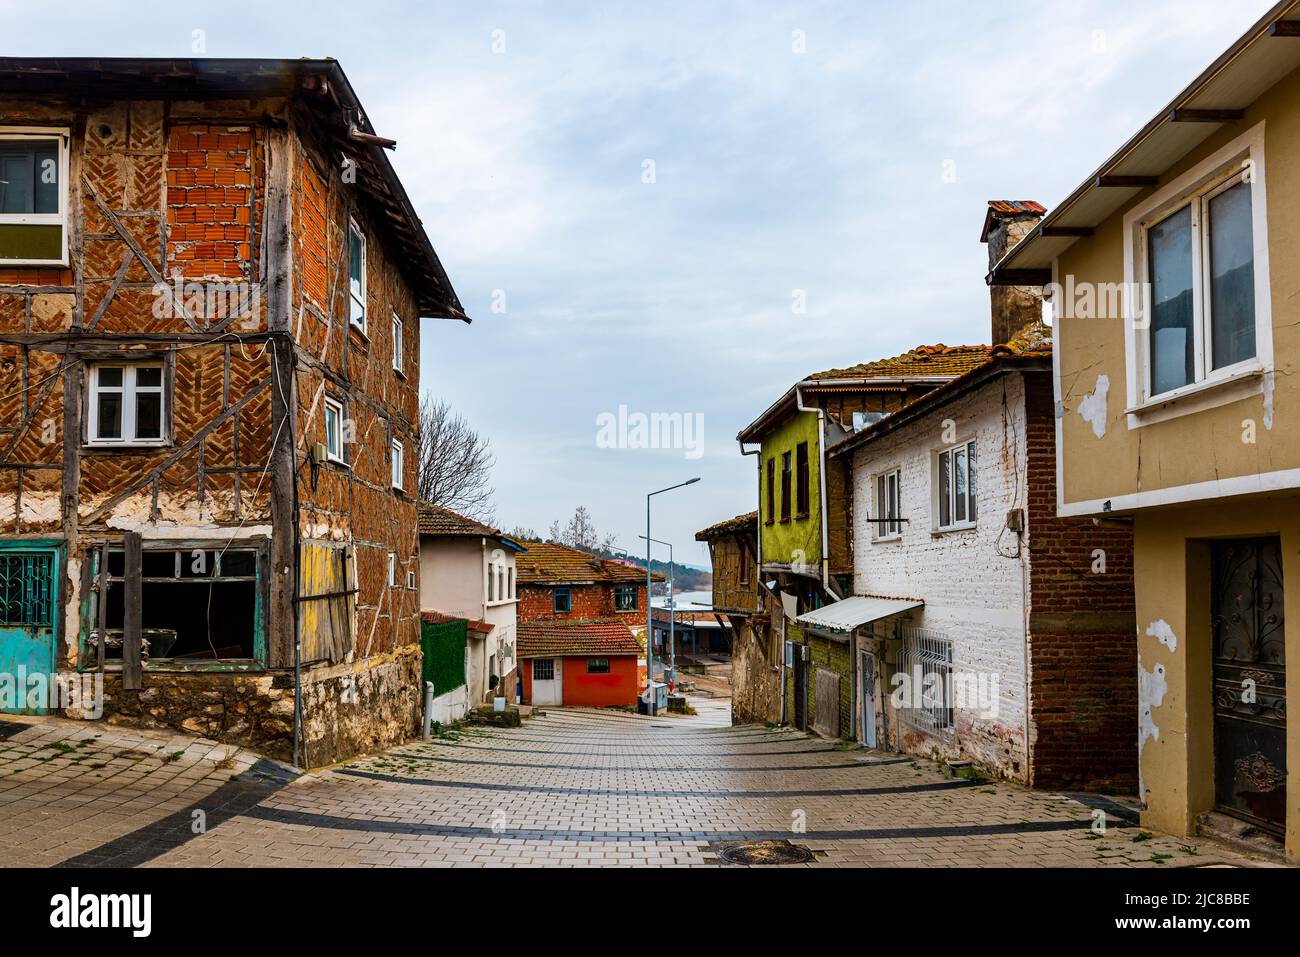 GOLYAZI, BURSA, TURKEY. Golyazi is a town founded on a peninsula on Lake Uluabat. Stock Photo